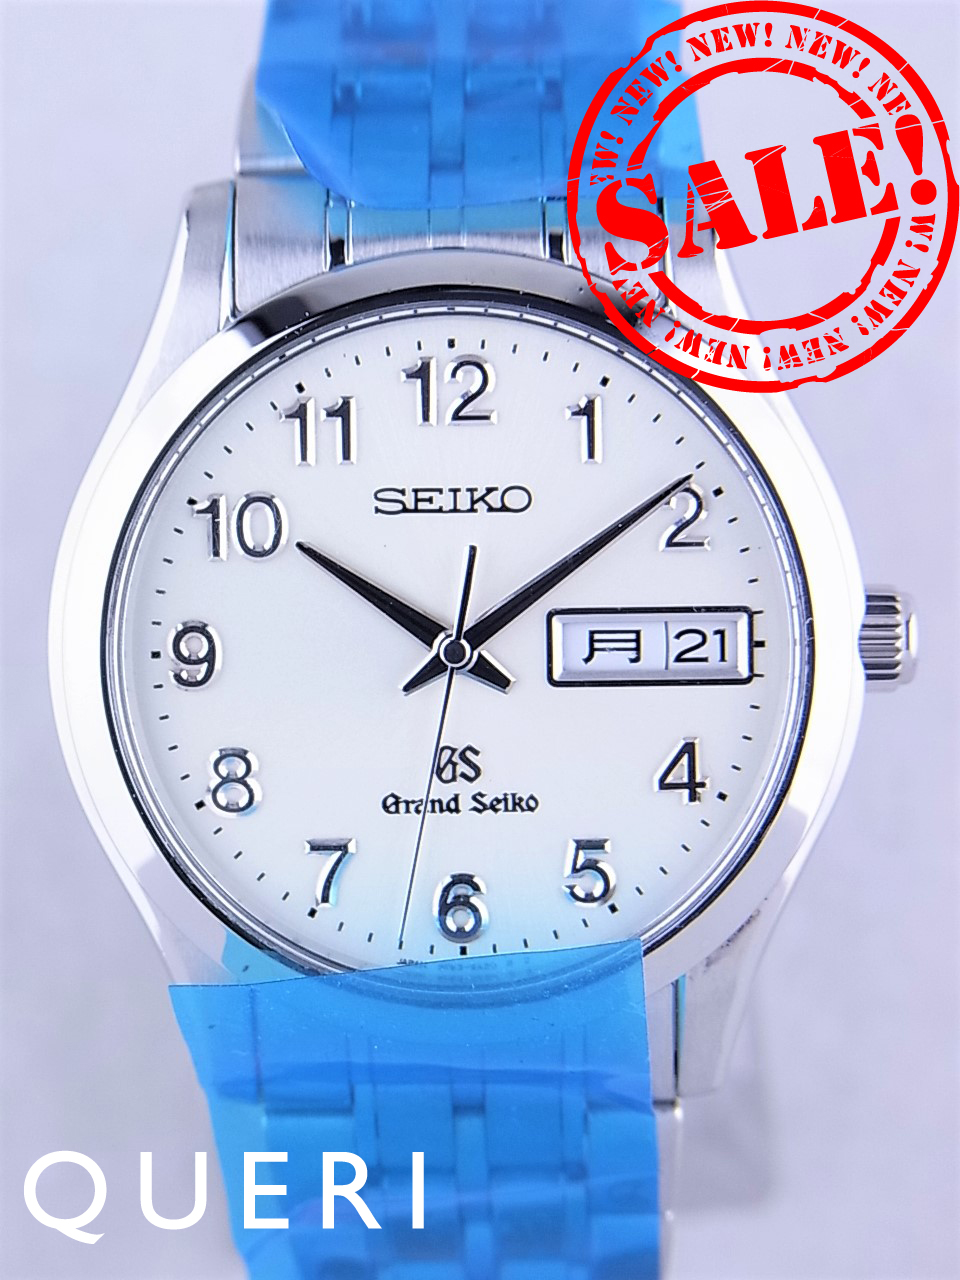 グランドセイコー9fクォーツ デイデイト 生産終了モデルsbgt005 9f 9a30 を最安値価格で販売中 ブランド時計販売のクエリ